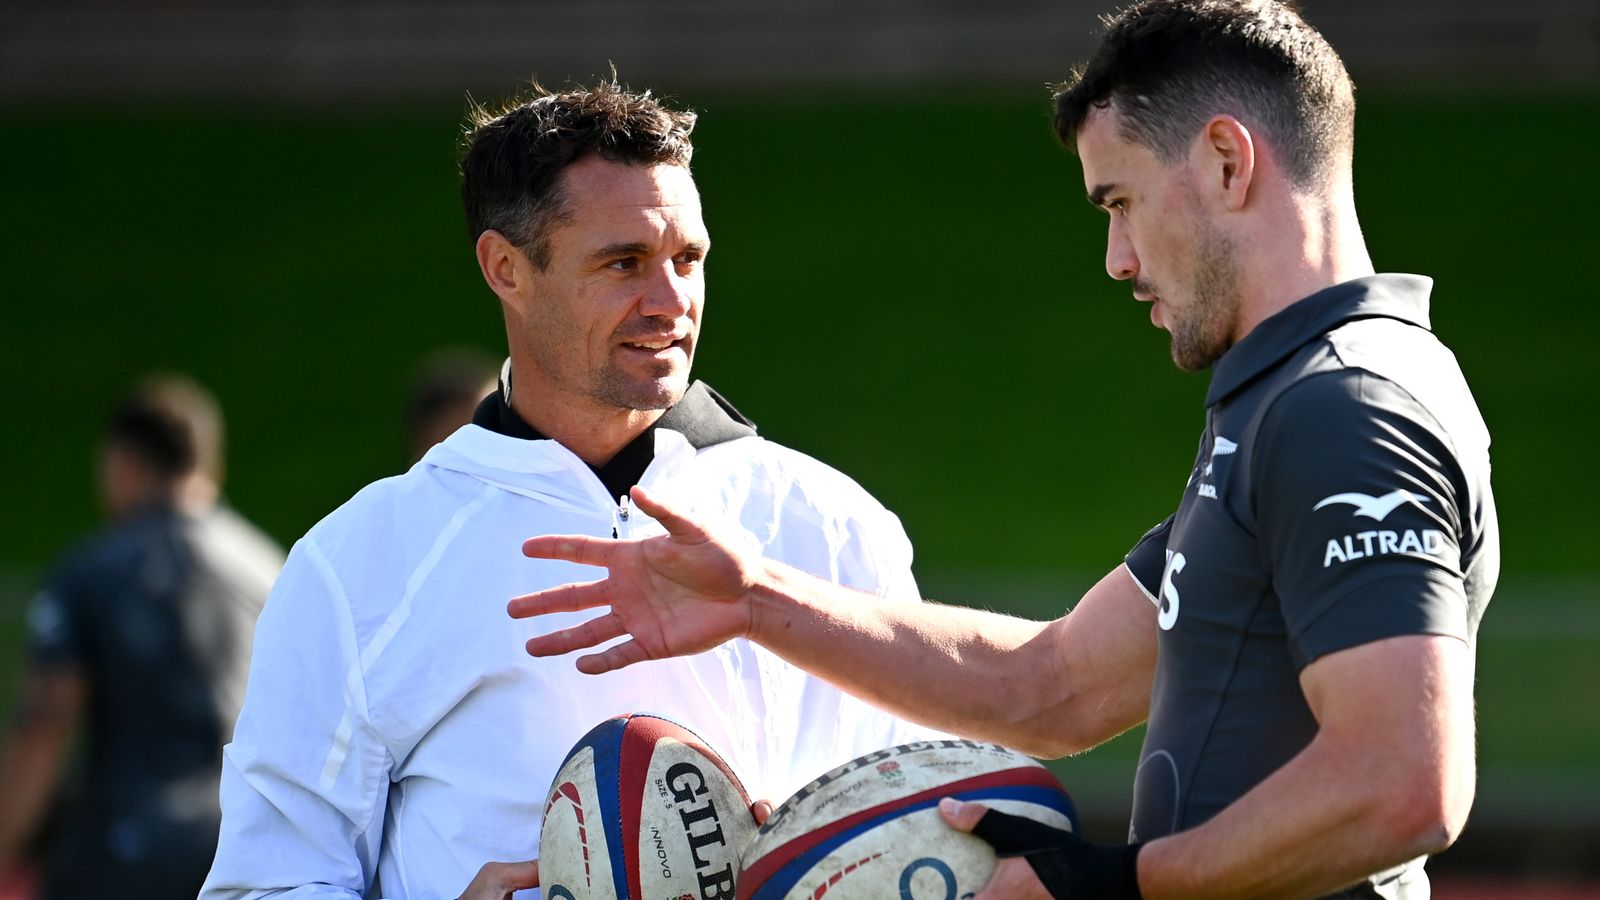 Coupe du monde de rugby : Dan Carter soutient la Nouvelle-Zélande pour briller en France malgré les récentes difficultés |  Actualités du rugby à XV